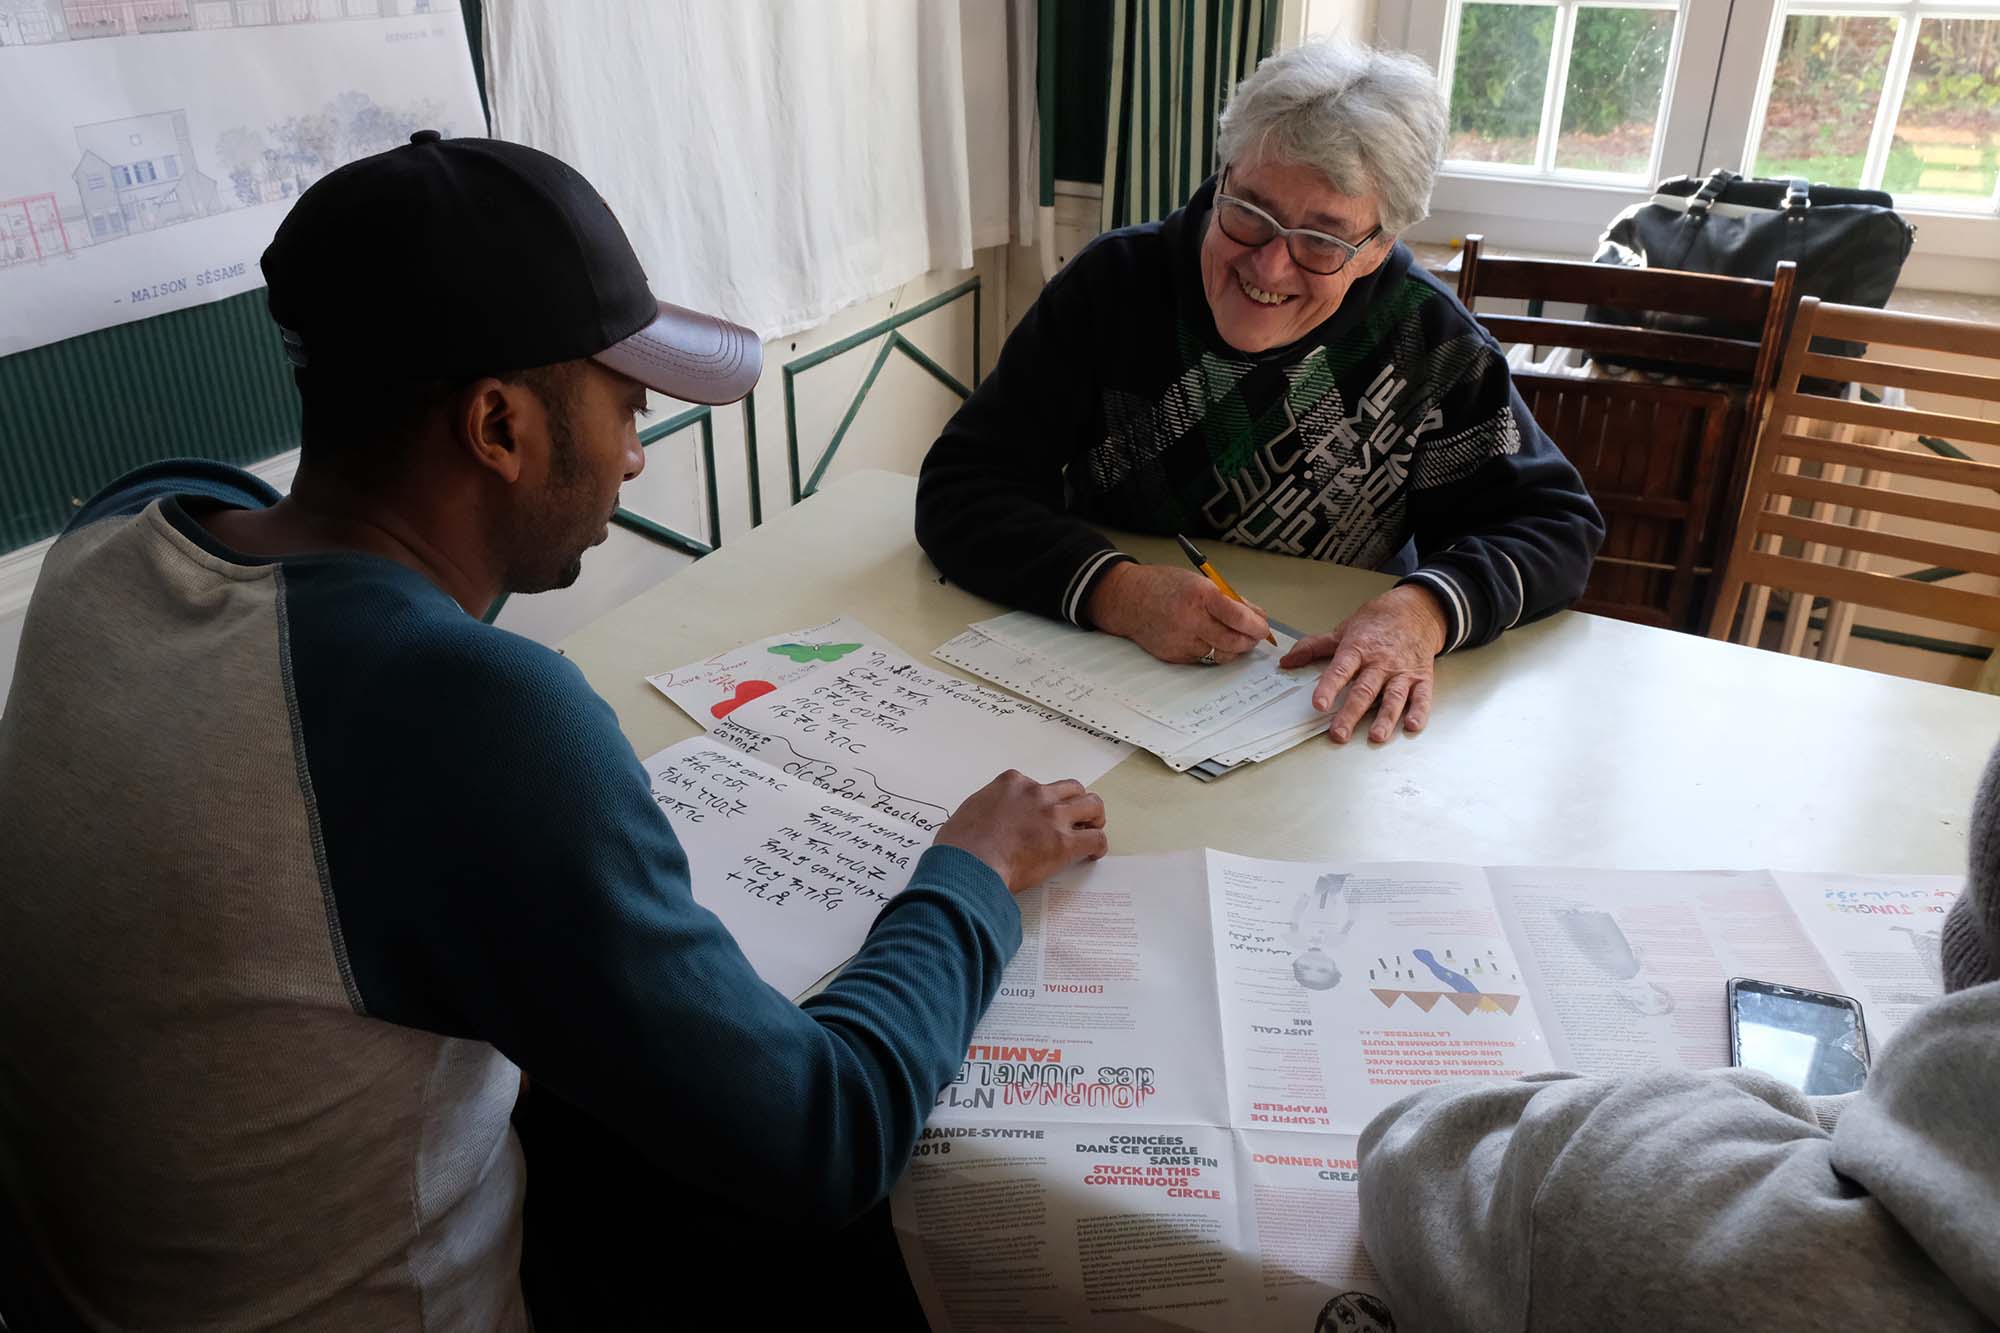 Eve-Marie, bénévole de longue date à Calais, aide Robel à écrire son texte